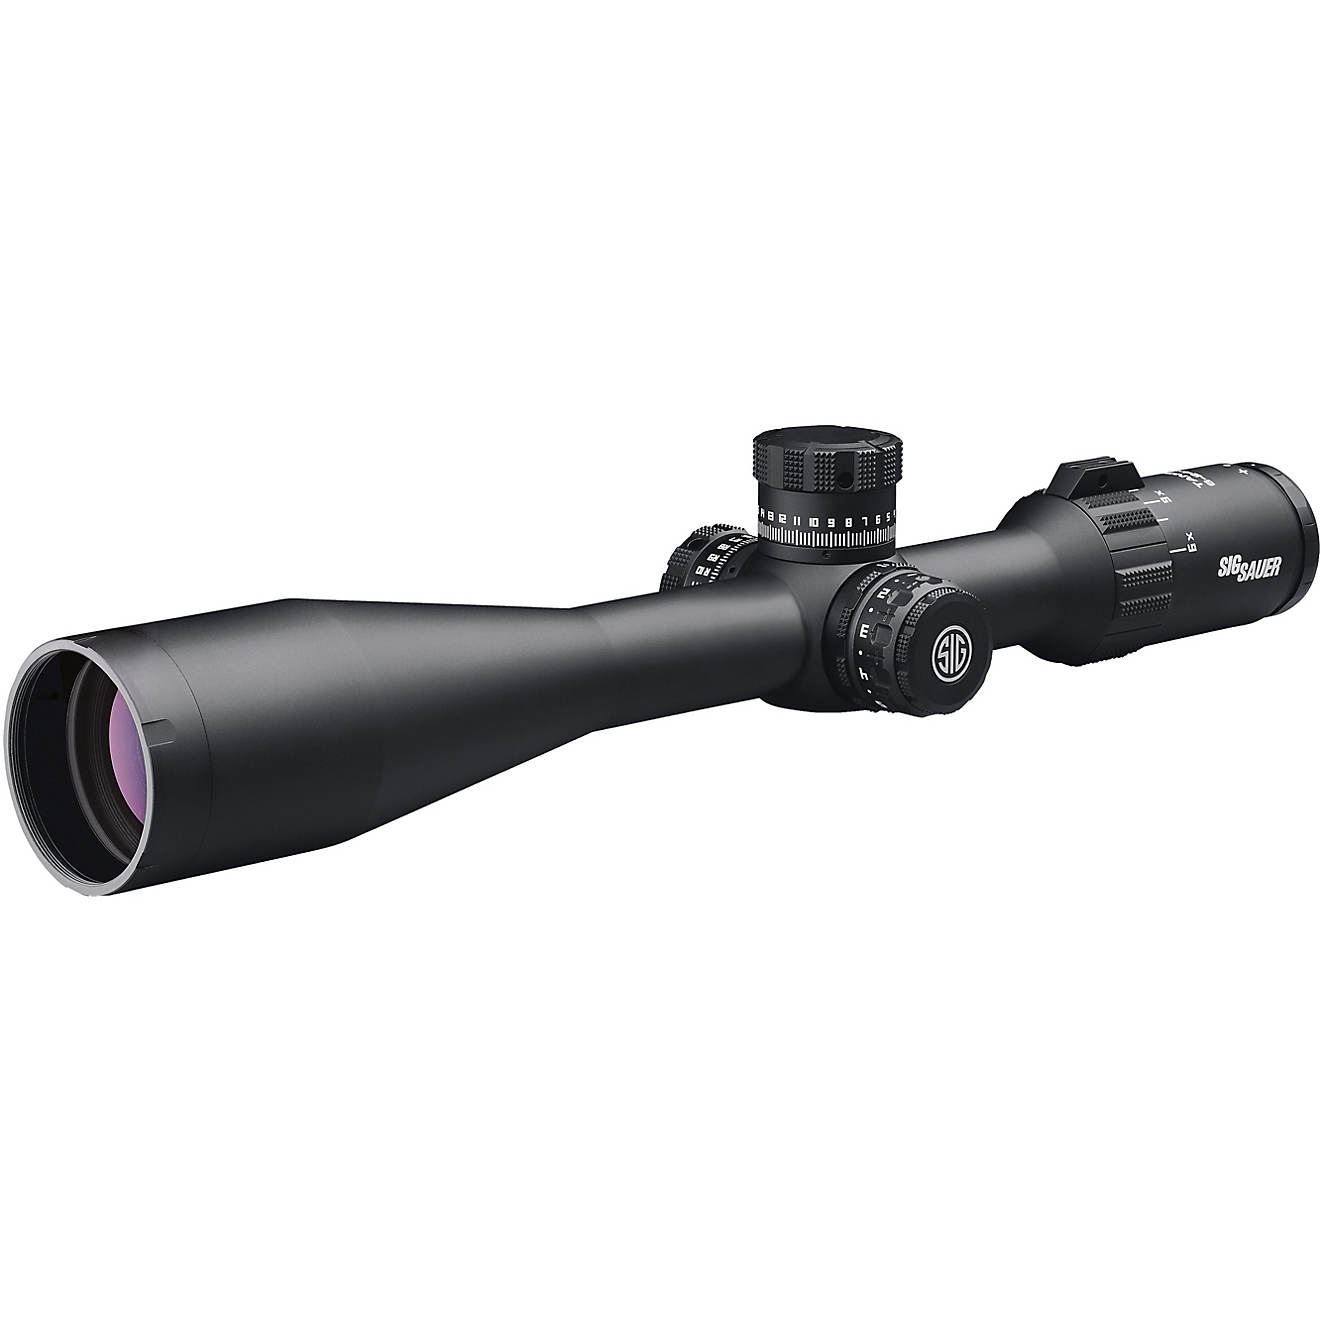 SIG SAUER Electro-Optics SOT46114 Tango4 6 - 24 x 50 Riflescope                                                                  - view number 1